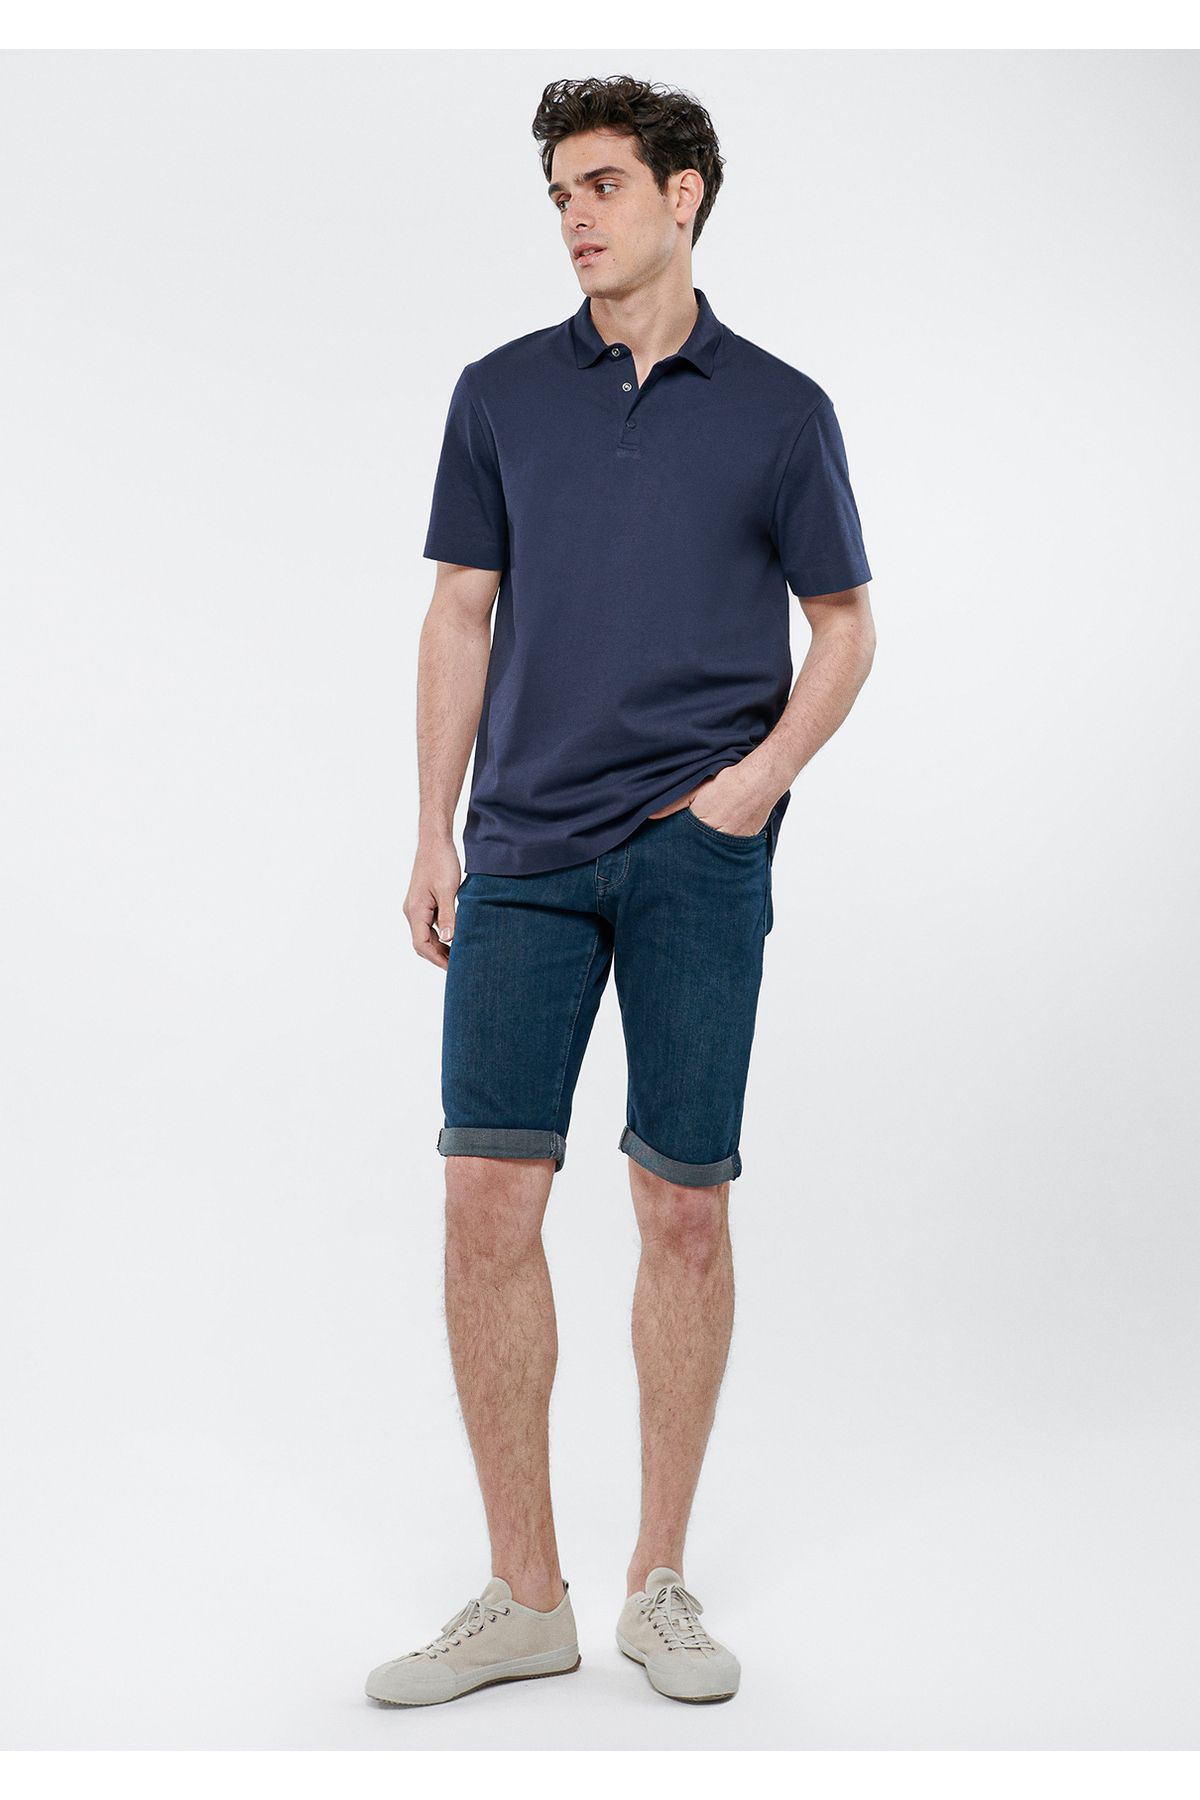 شلوارک جین سرمه ای از کالکشن Nicholas Premium مردانه ماوی Mavi (ساخت ترکیه)